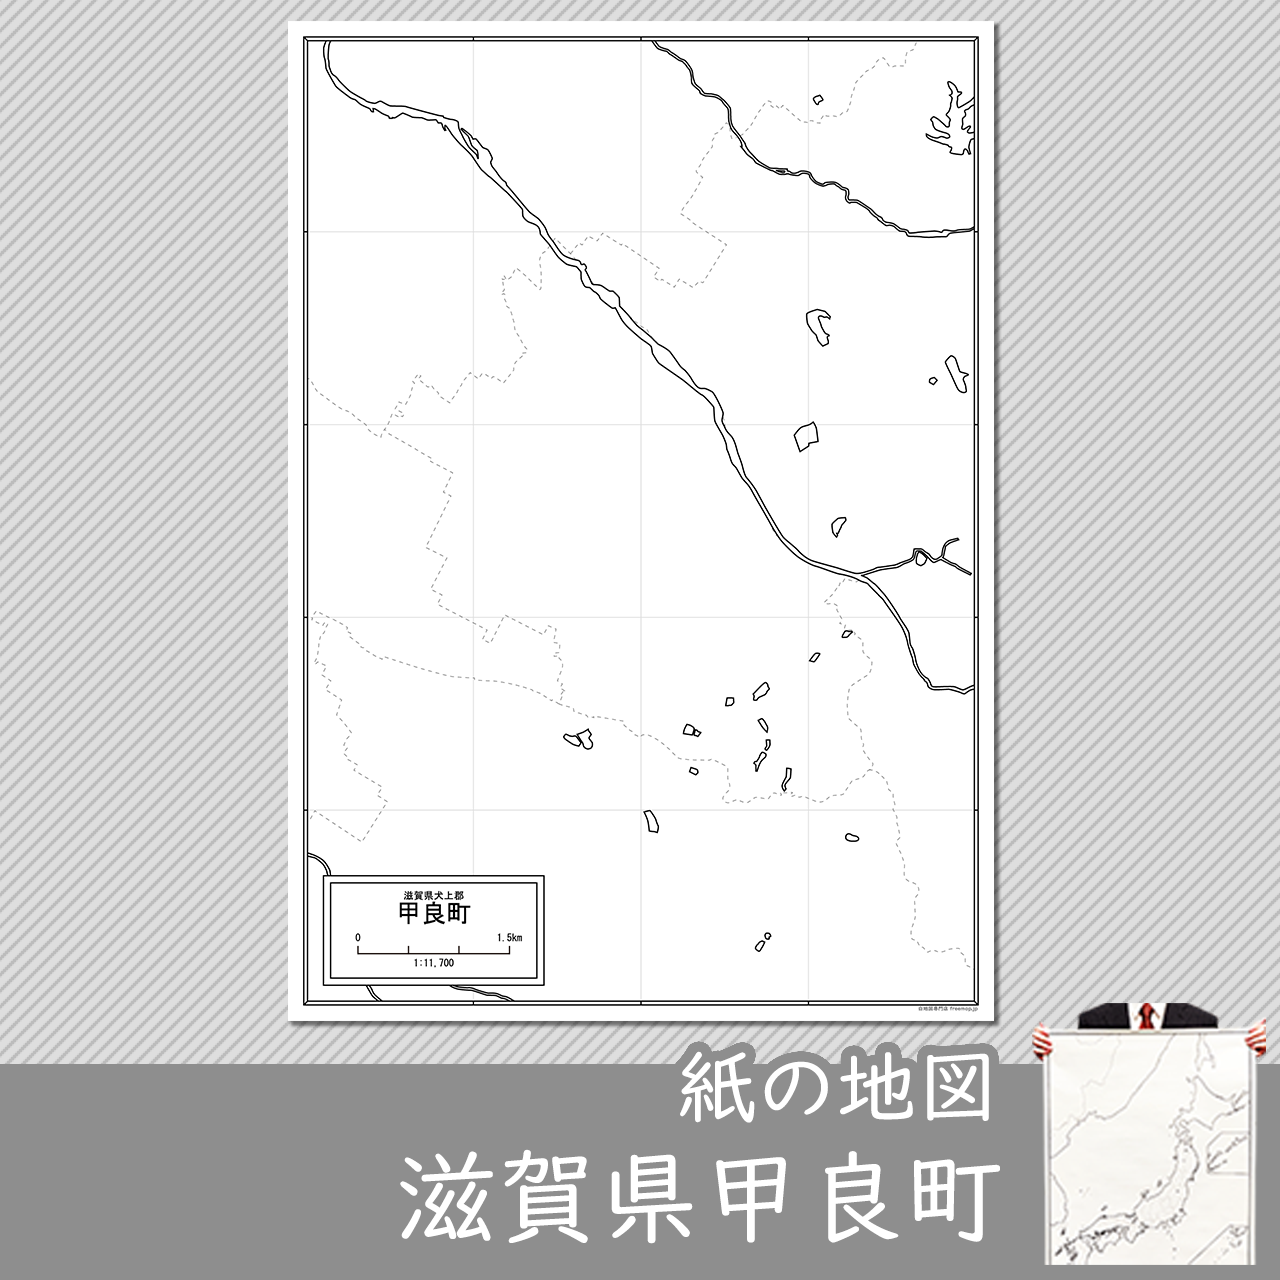 甲良町の紙の白地図